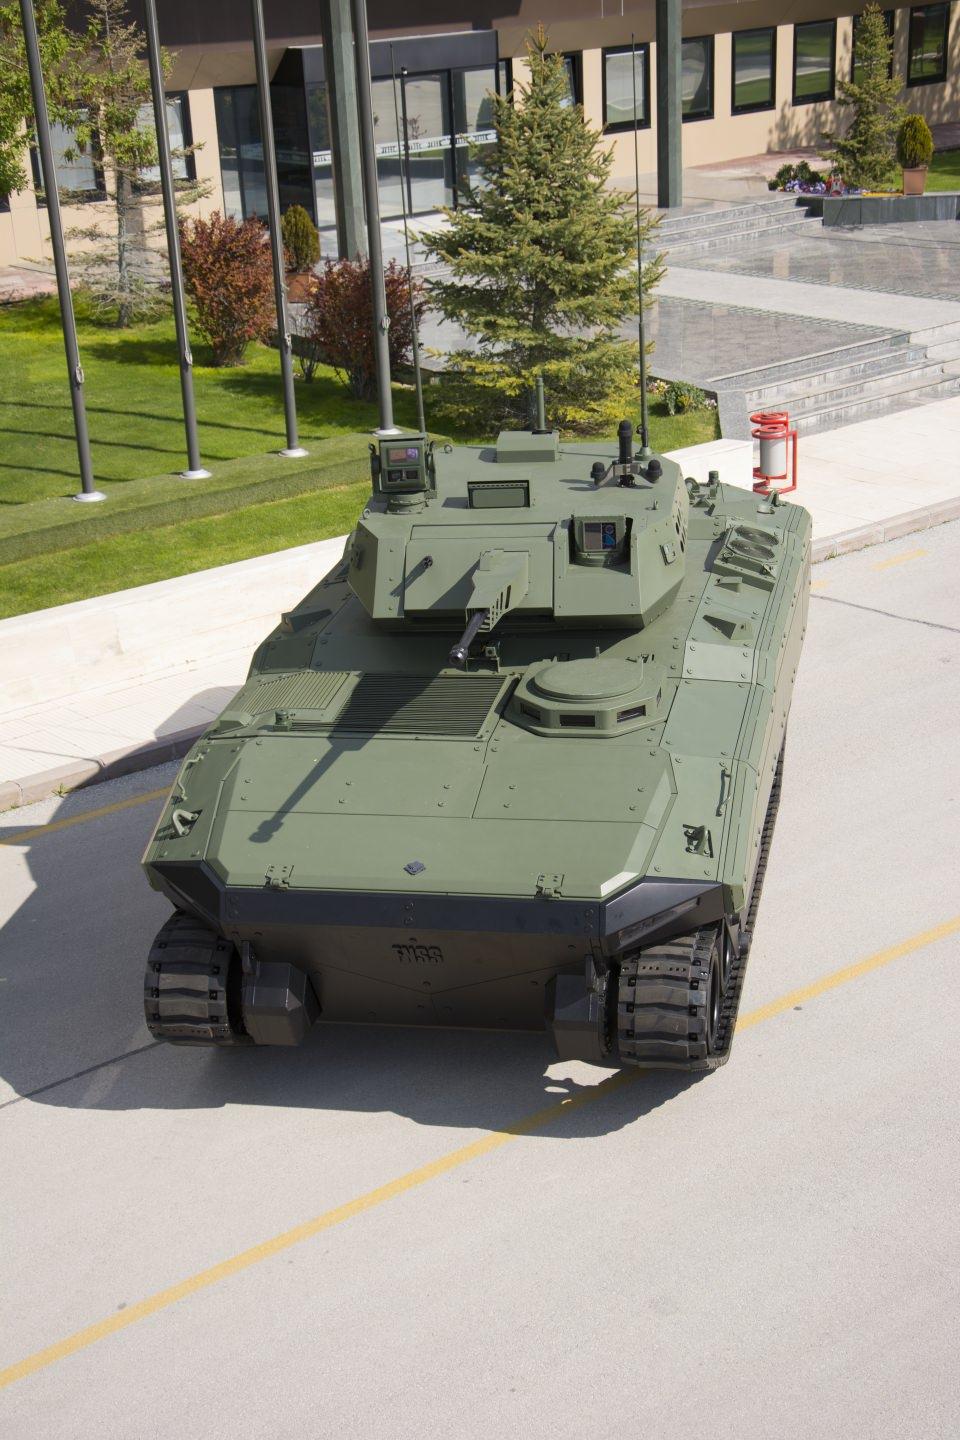 <p><span style="color:#DAA520"><strong>Ana muharebe tankları ile ortak hareket yeteneği</strong></span></p>

<p>Türk Silahlı Kuvvetleri ile dost ve müttefik dünya ordularının taktik ve teknik ihtiyaçlarını karşılama amacıyla geliştirilen yeni nesil zırhlı paletli araçların son üyesi Kaplan YN-ZMA, muharebe ağırlığına bağlı olarak 22-25 Bg/ton güç ağırlık oranında, otomatik şanzımanlı, ana muharebe tankları ile ortak hareket yeteneğine sahip. Paletli, 6 yol tekerlekli, düşük siluetli, soğuk ve sıcak iklim koşullarında, çamurlu/engebeli arazilerde, asfalt veya stabilize yollarda yüksek hızlı hareket edebiliyor.</p>
